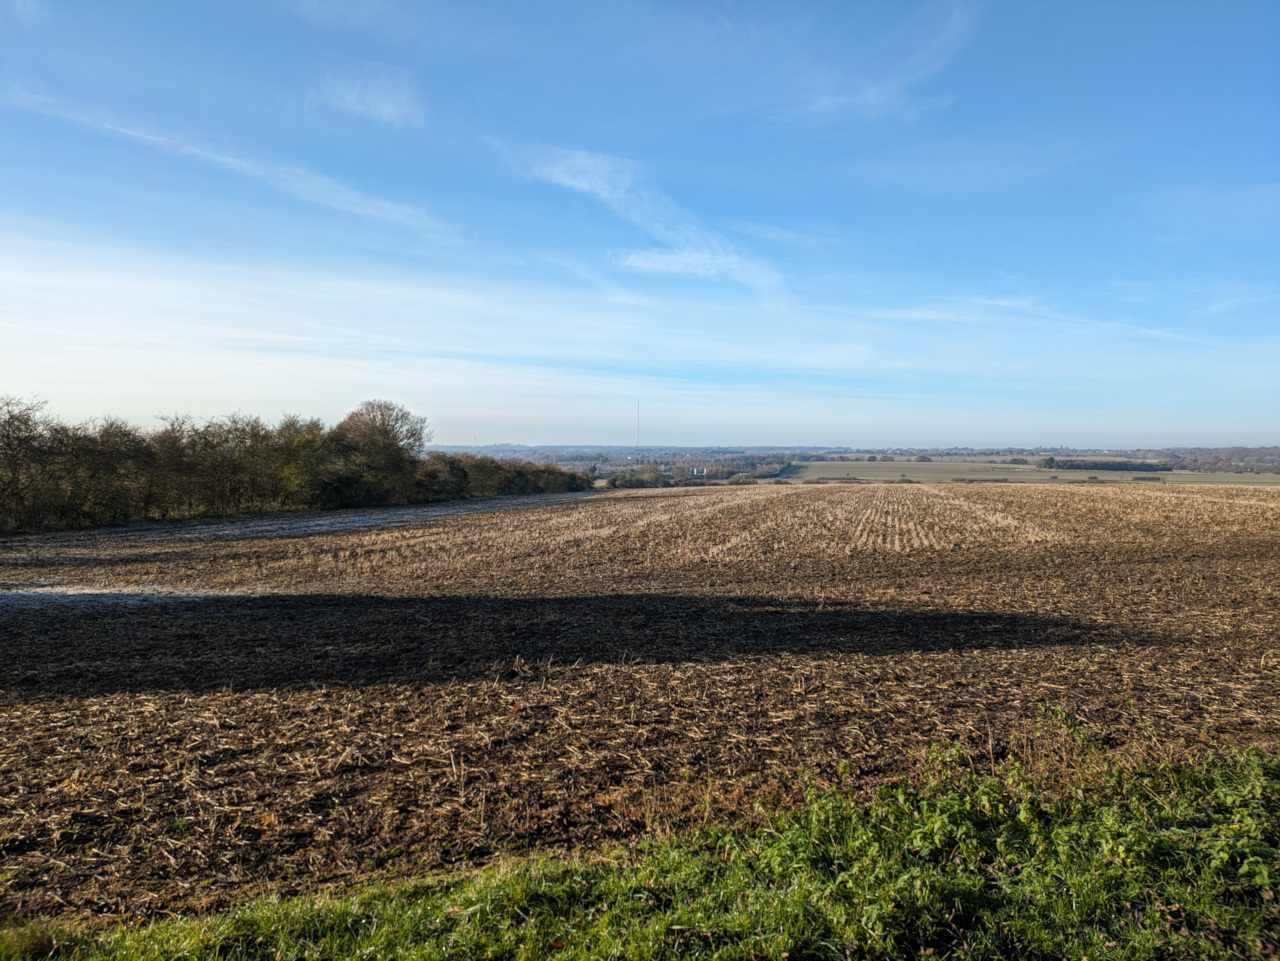 View towards Sandy Heath over farmland